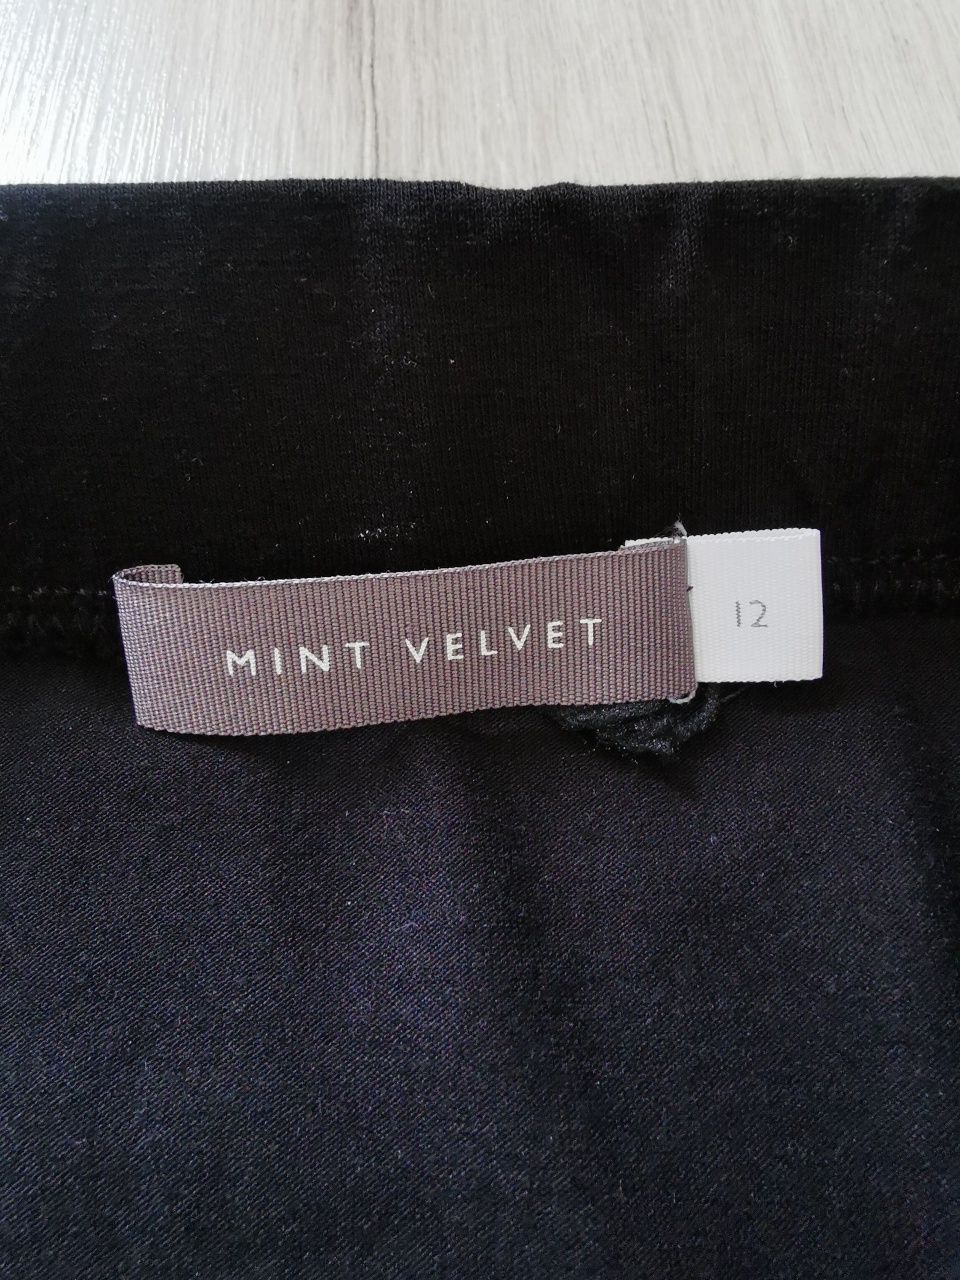 Mint Velvet czarna spódnica maxi 40 długa gładka na gumce wiskoza